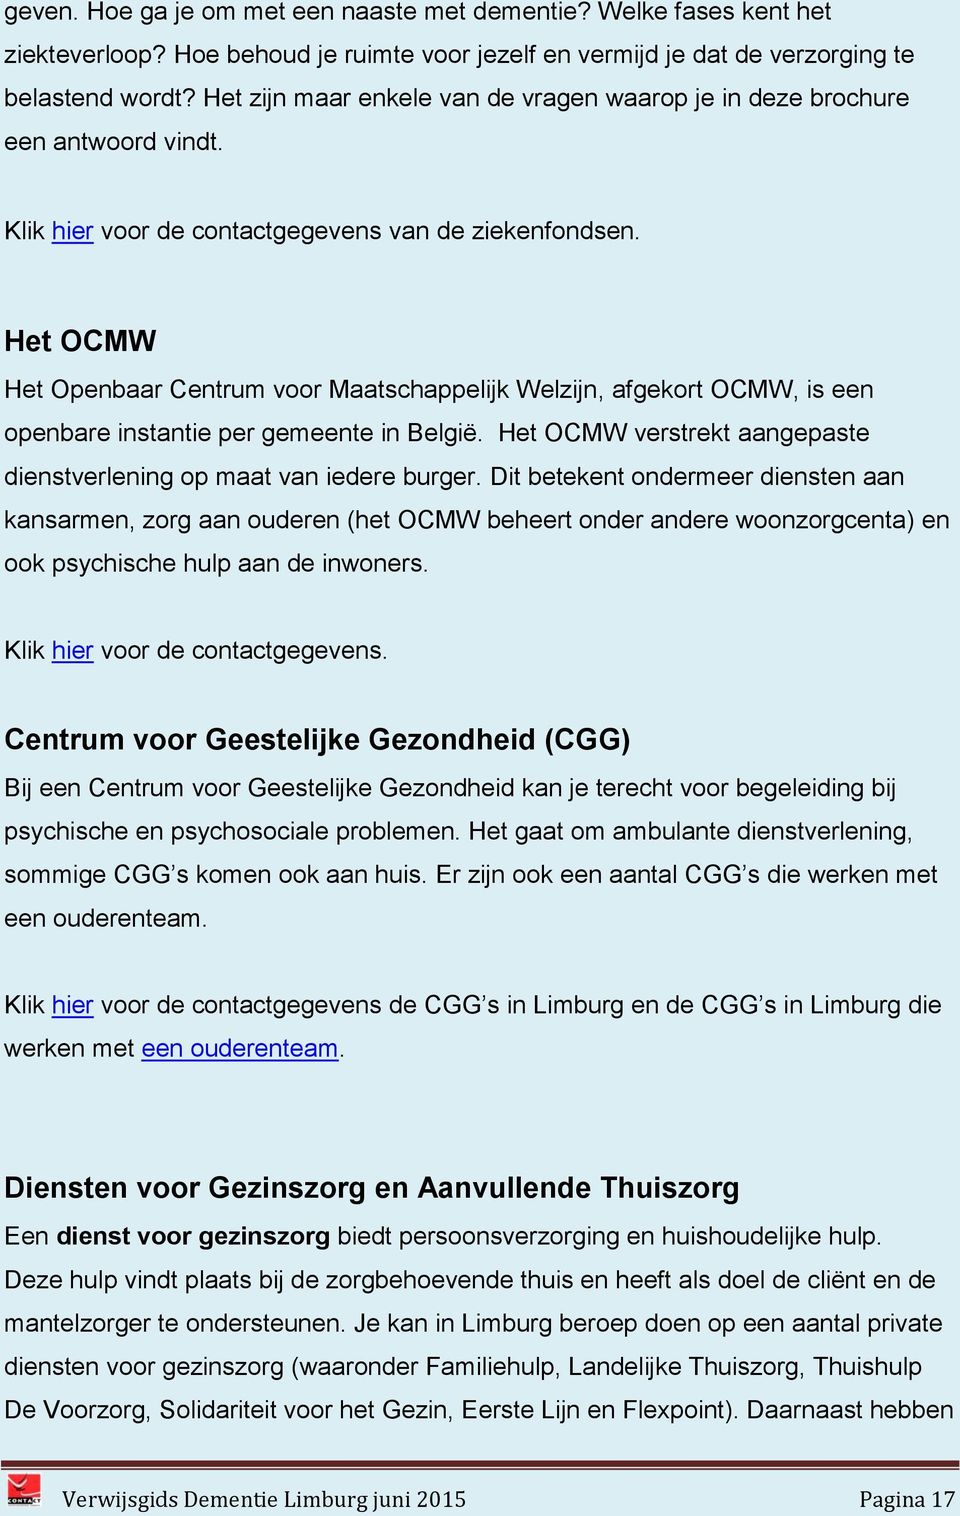 Het OCMW Het Openbaar Centrum voor Maatschappelijk Welzijn, afgekort OCMW, is een openbare instantie per gemeente in België. Het OCMW verstrekt aangepaste dienstverlening op maat van iedere burger.